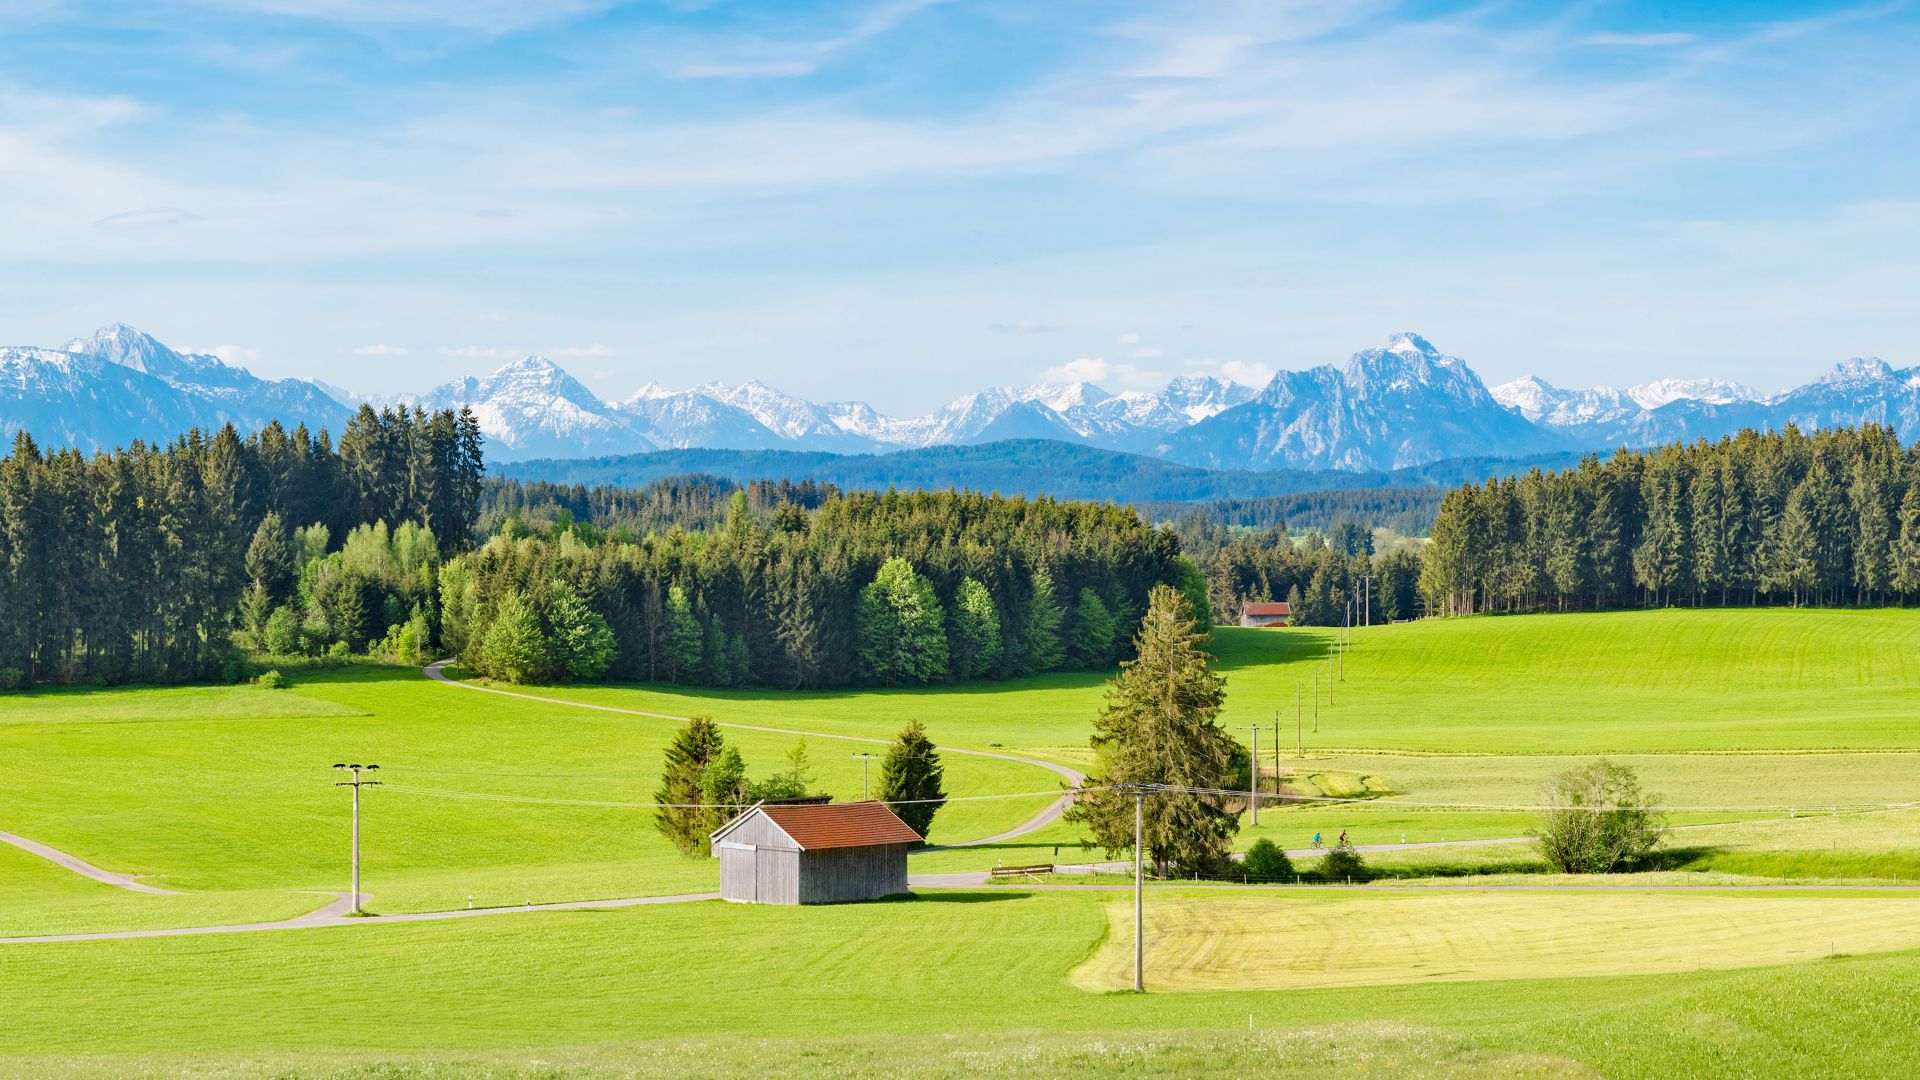 Allgäu, bâtiments agricoles à toit rouge sur un vaste paysage verdoyant de champs et de forêts avec un décor spectaculaire de montagnes enneigées à l’horizon